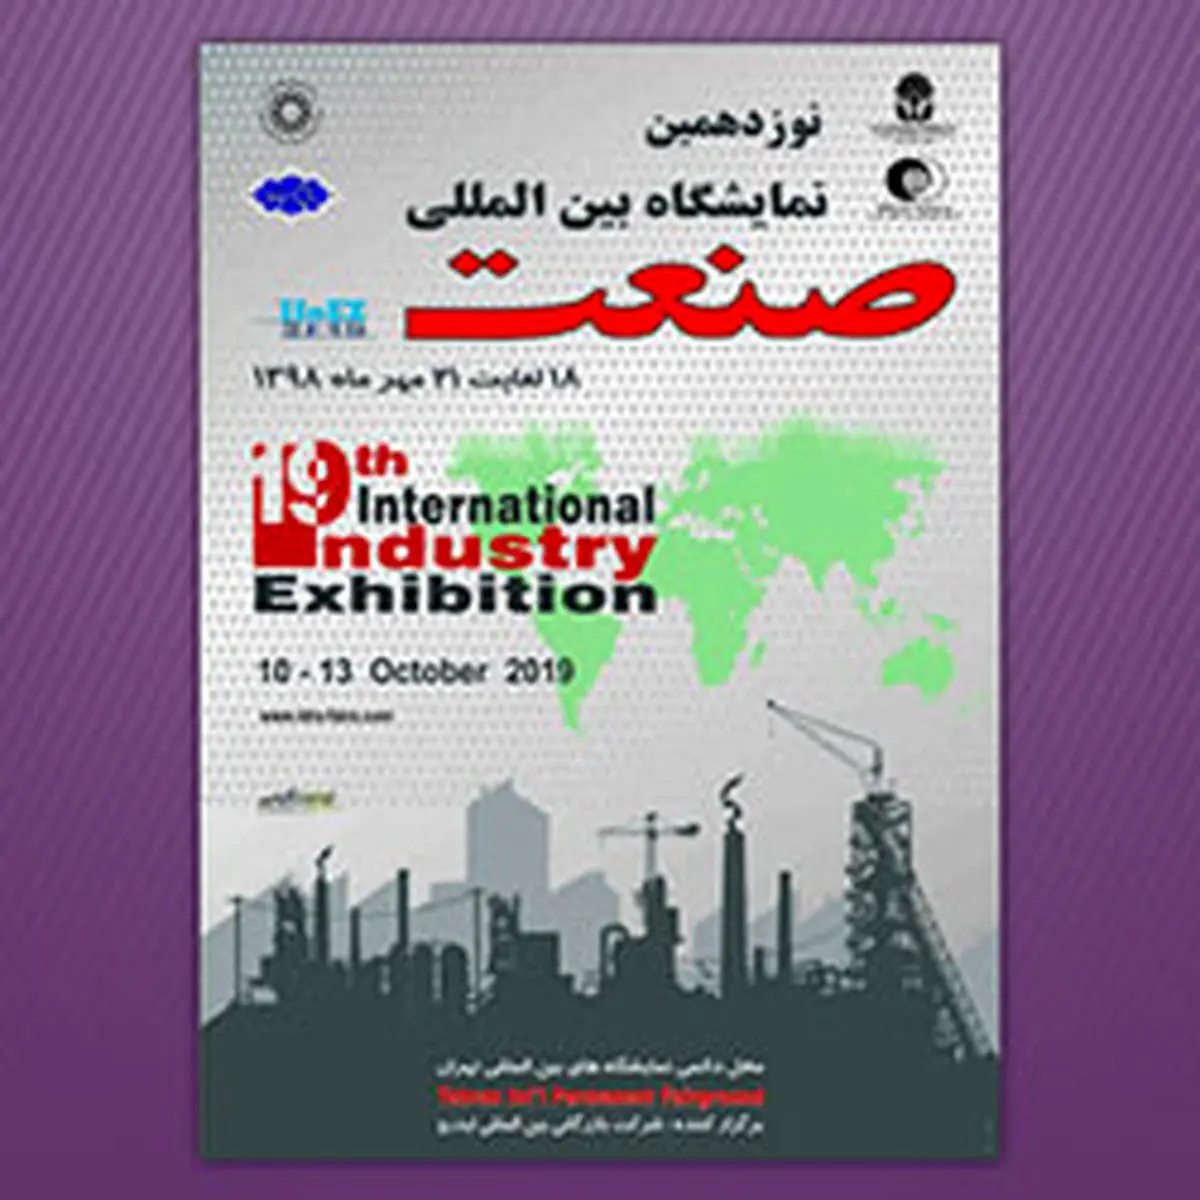 حضور فعال گروه اقتصادنوین در نوزدهمین دوره نمایشگاه صنعت تهران

